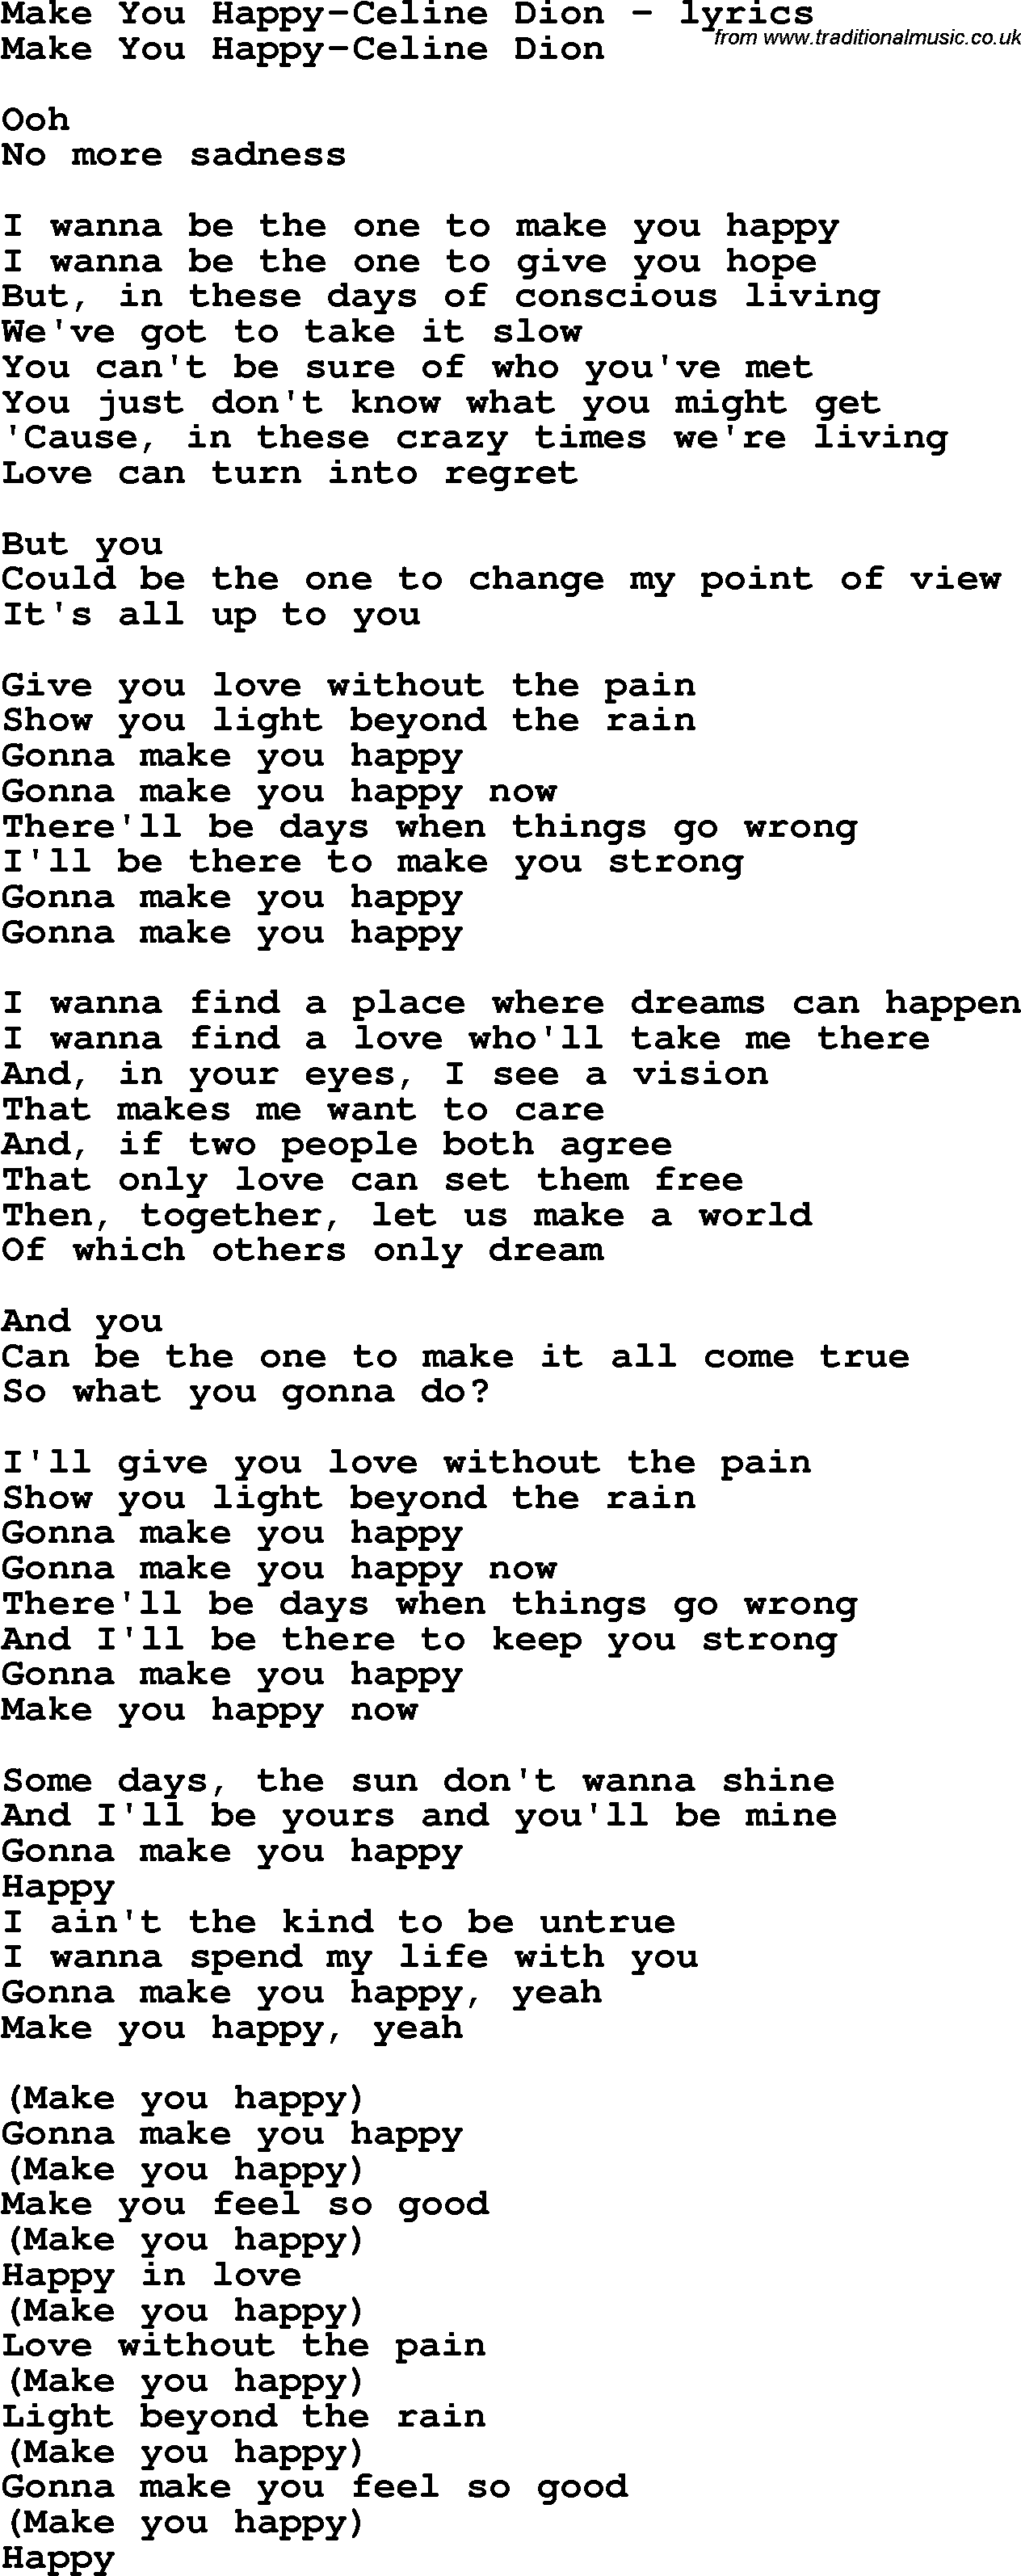 Love Song Lyrics for: Make You Happy-Celine Dion